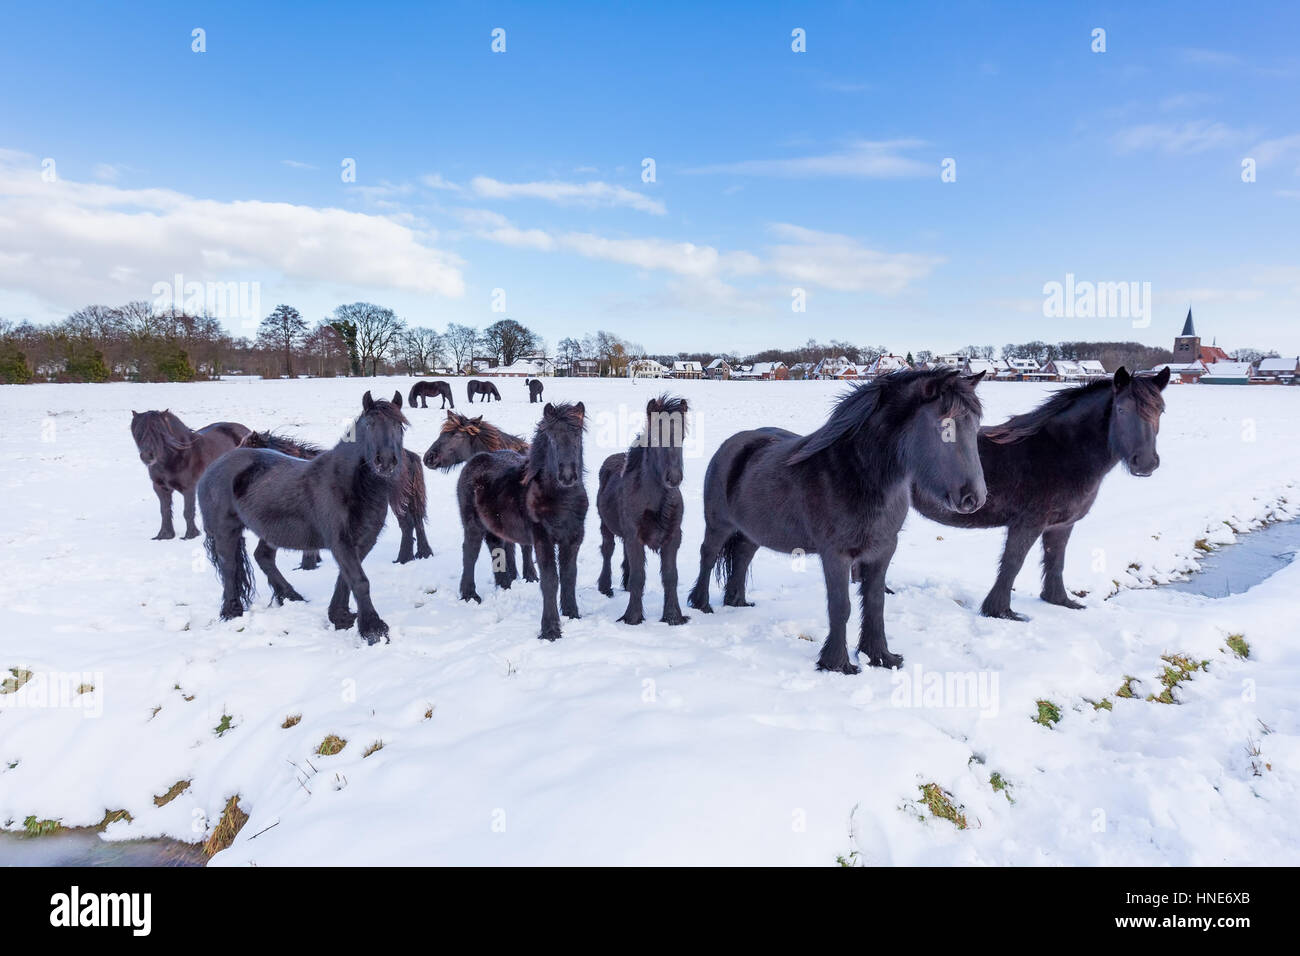 Troupeau de chevaux de frise noire dans la neige pendant la saison d'hiver Banque D'Images